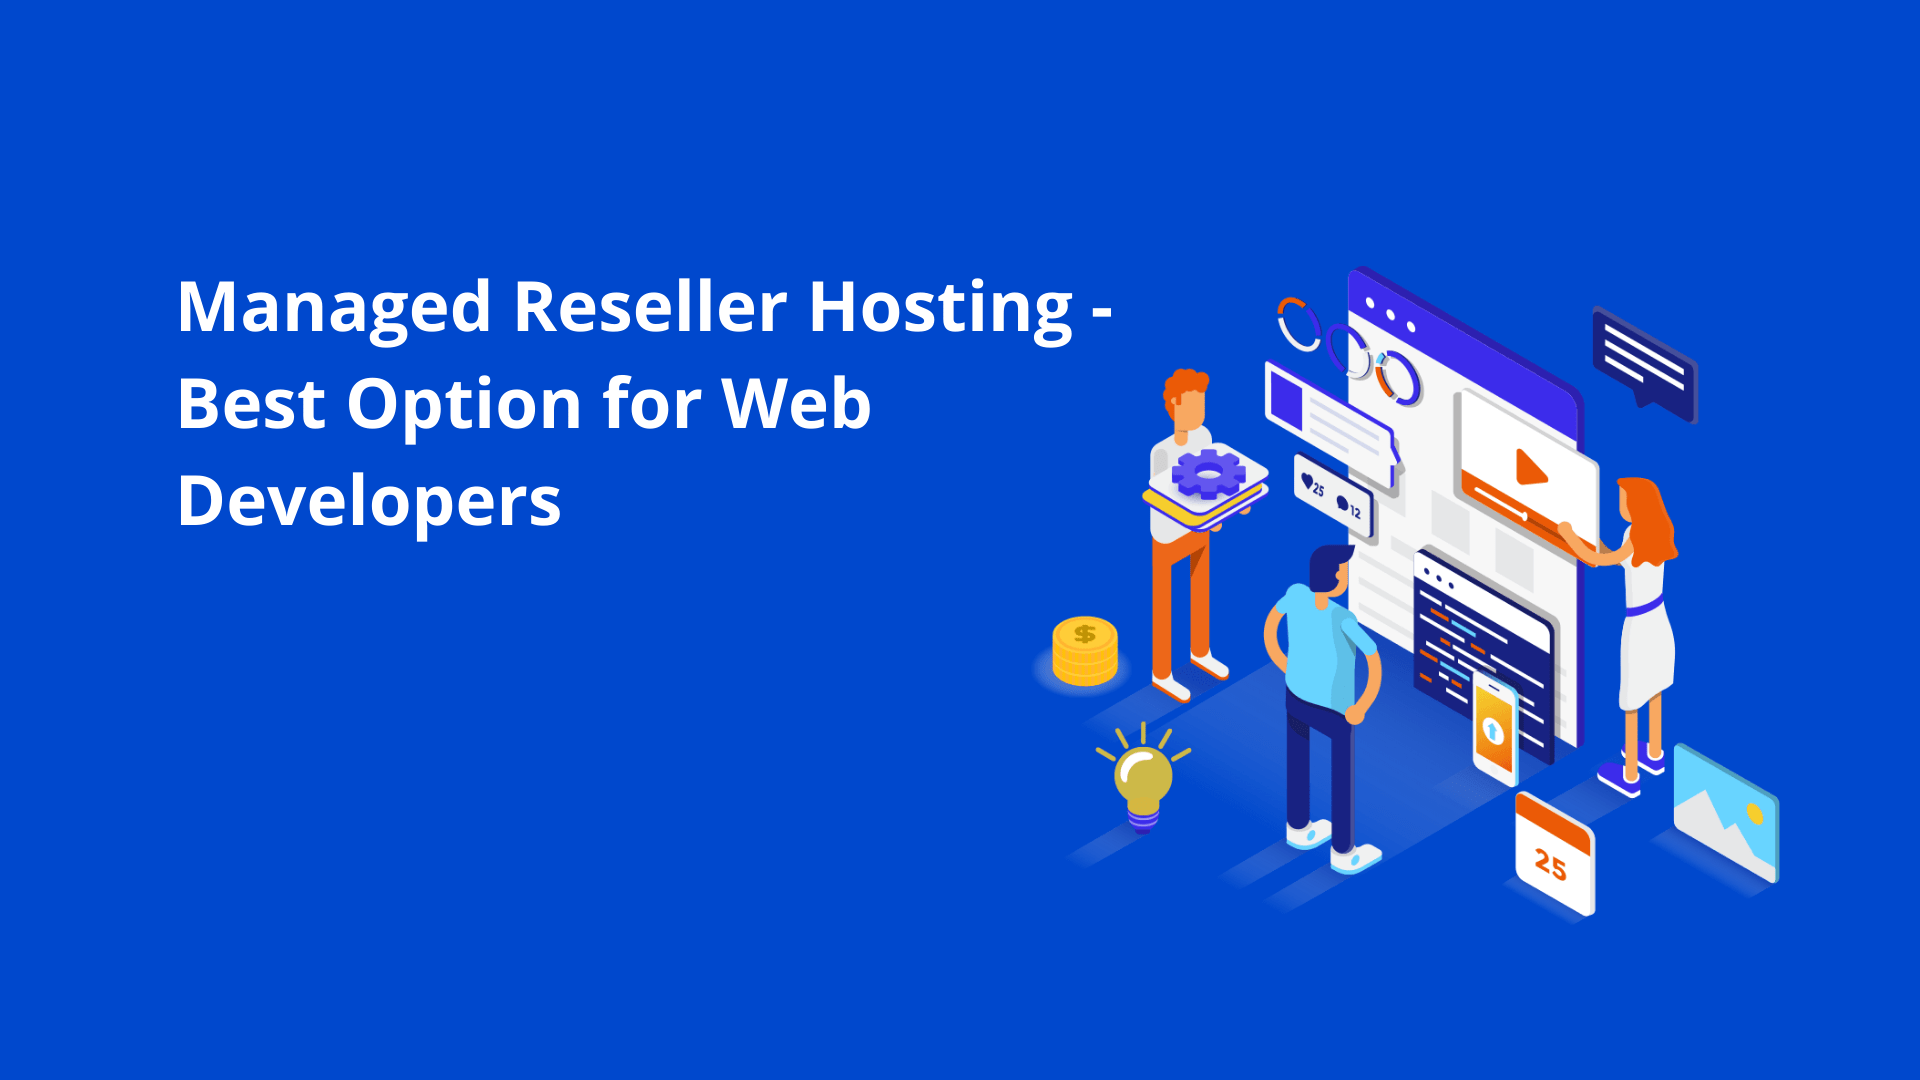 Why Web Developers Should Consider Managed Reseller Hosting